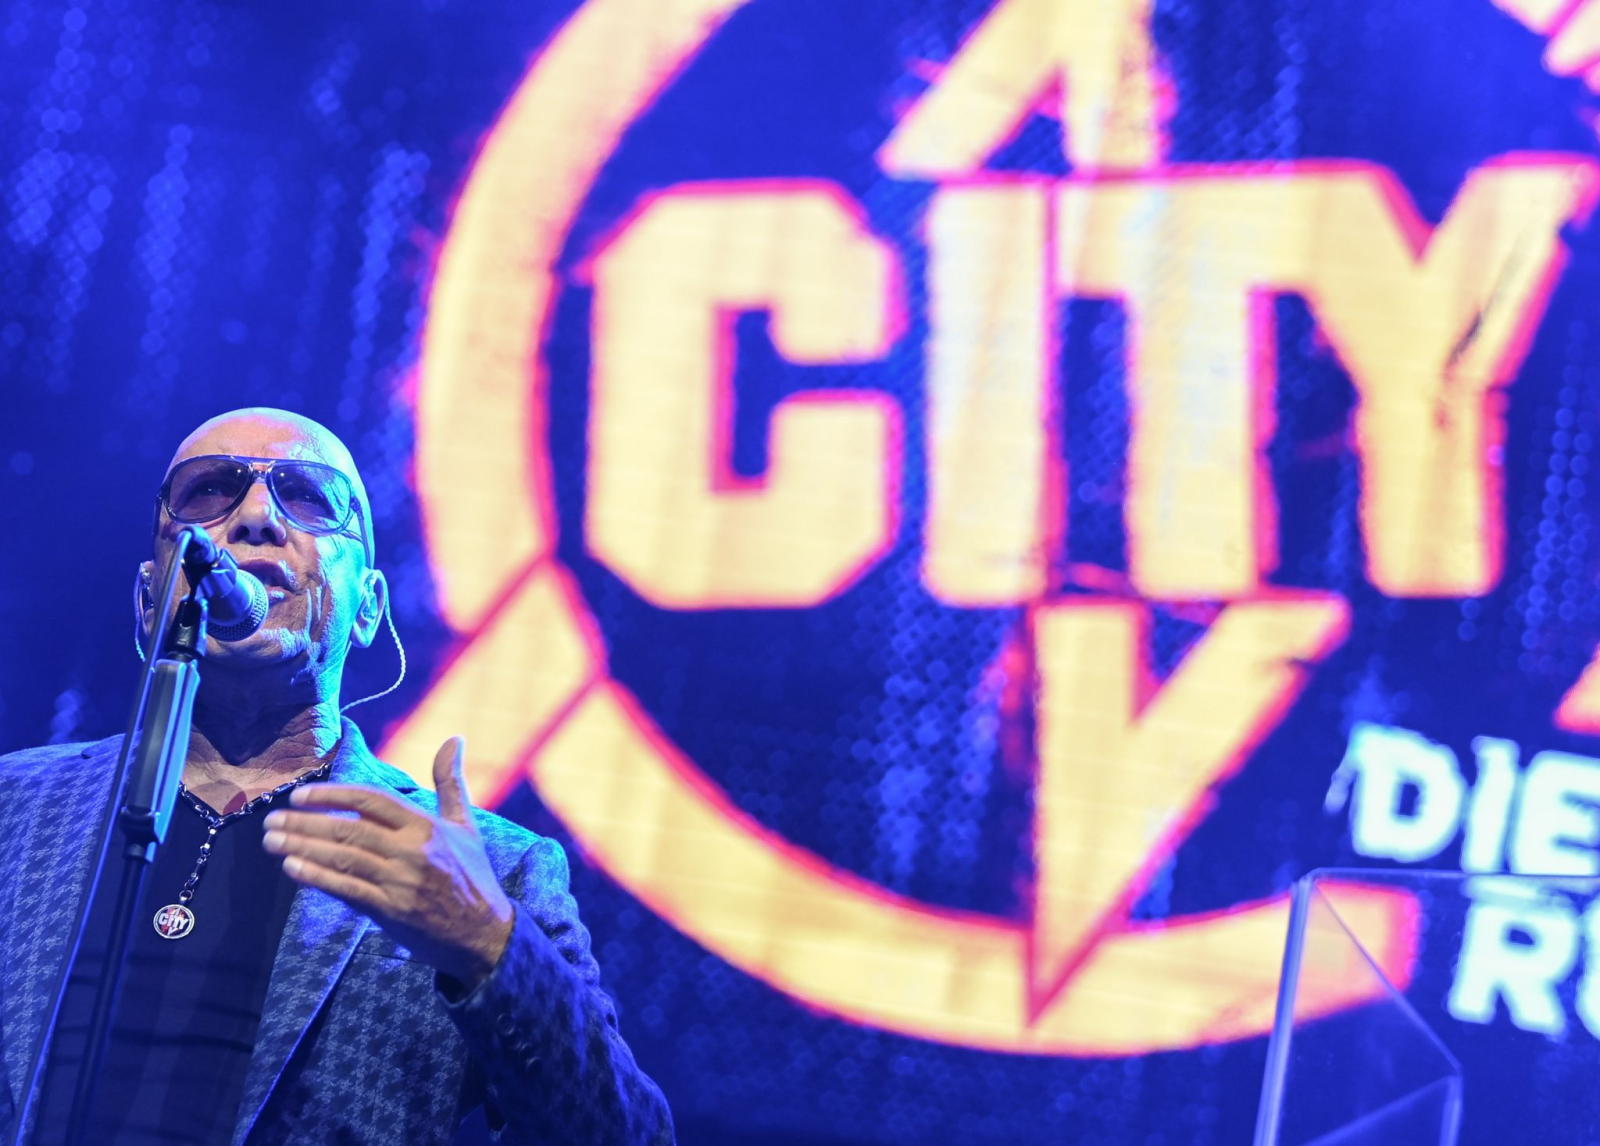 Der Sänger Toni Krahl von der Band City bei einem Auftritt anlässlich eines Pressetermins.